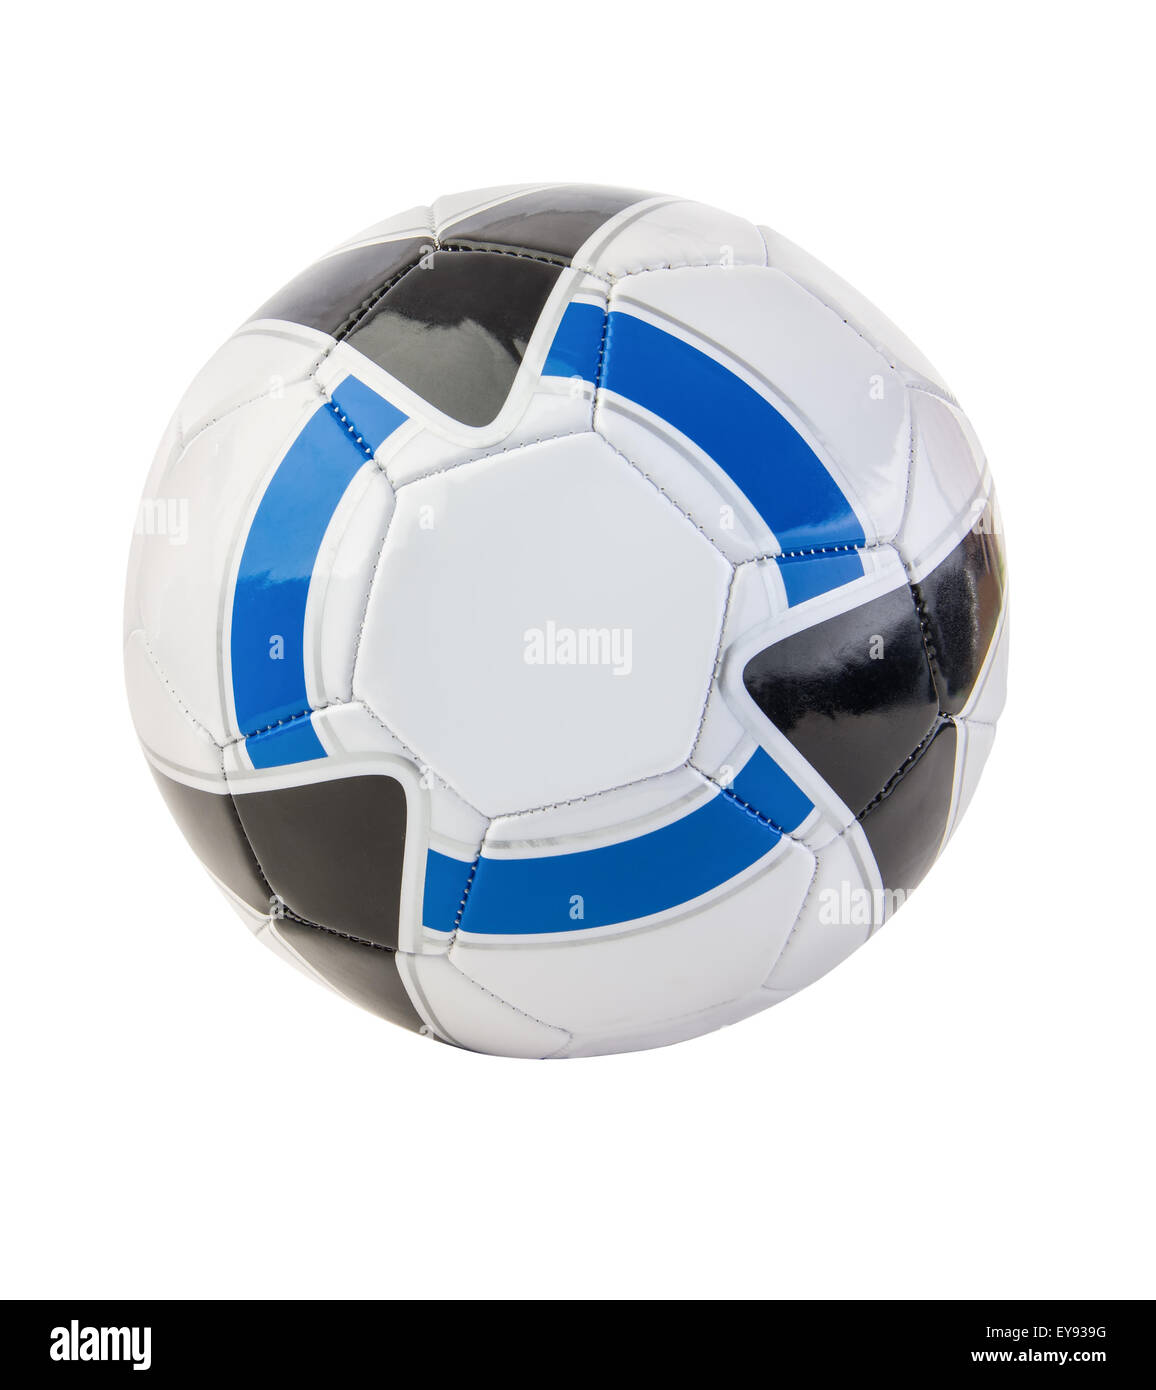 Ballon de soccer colorés sur fond blanc Banque D'Images